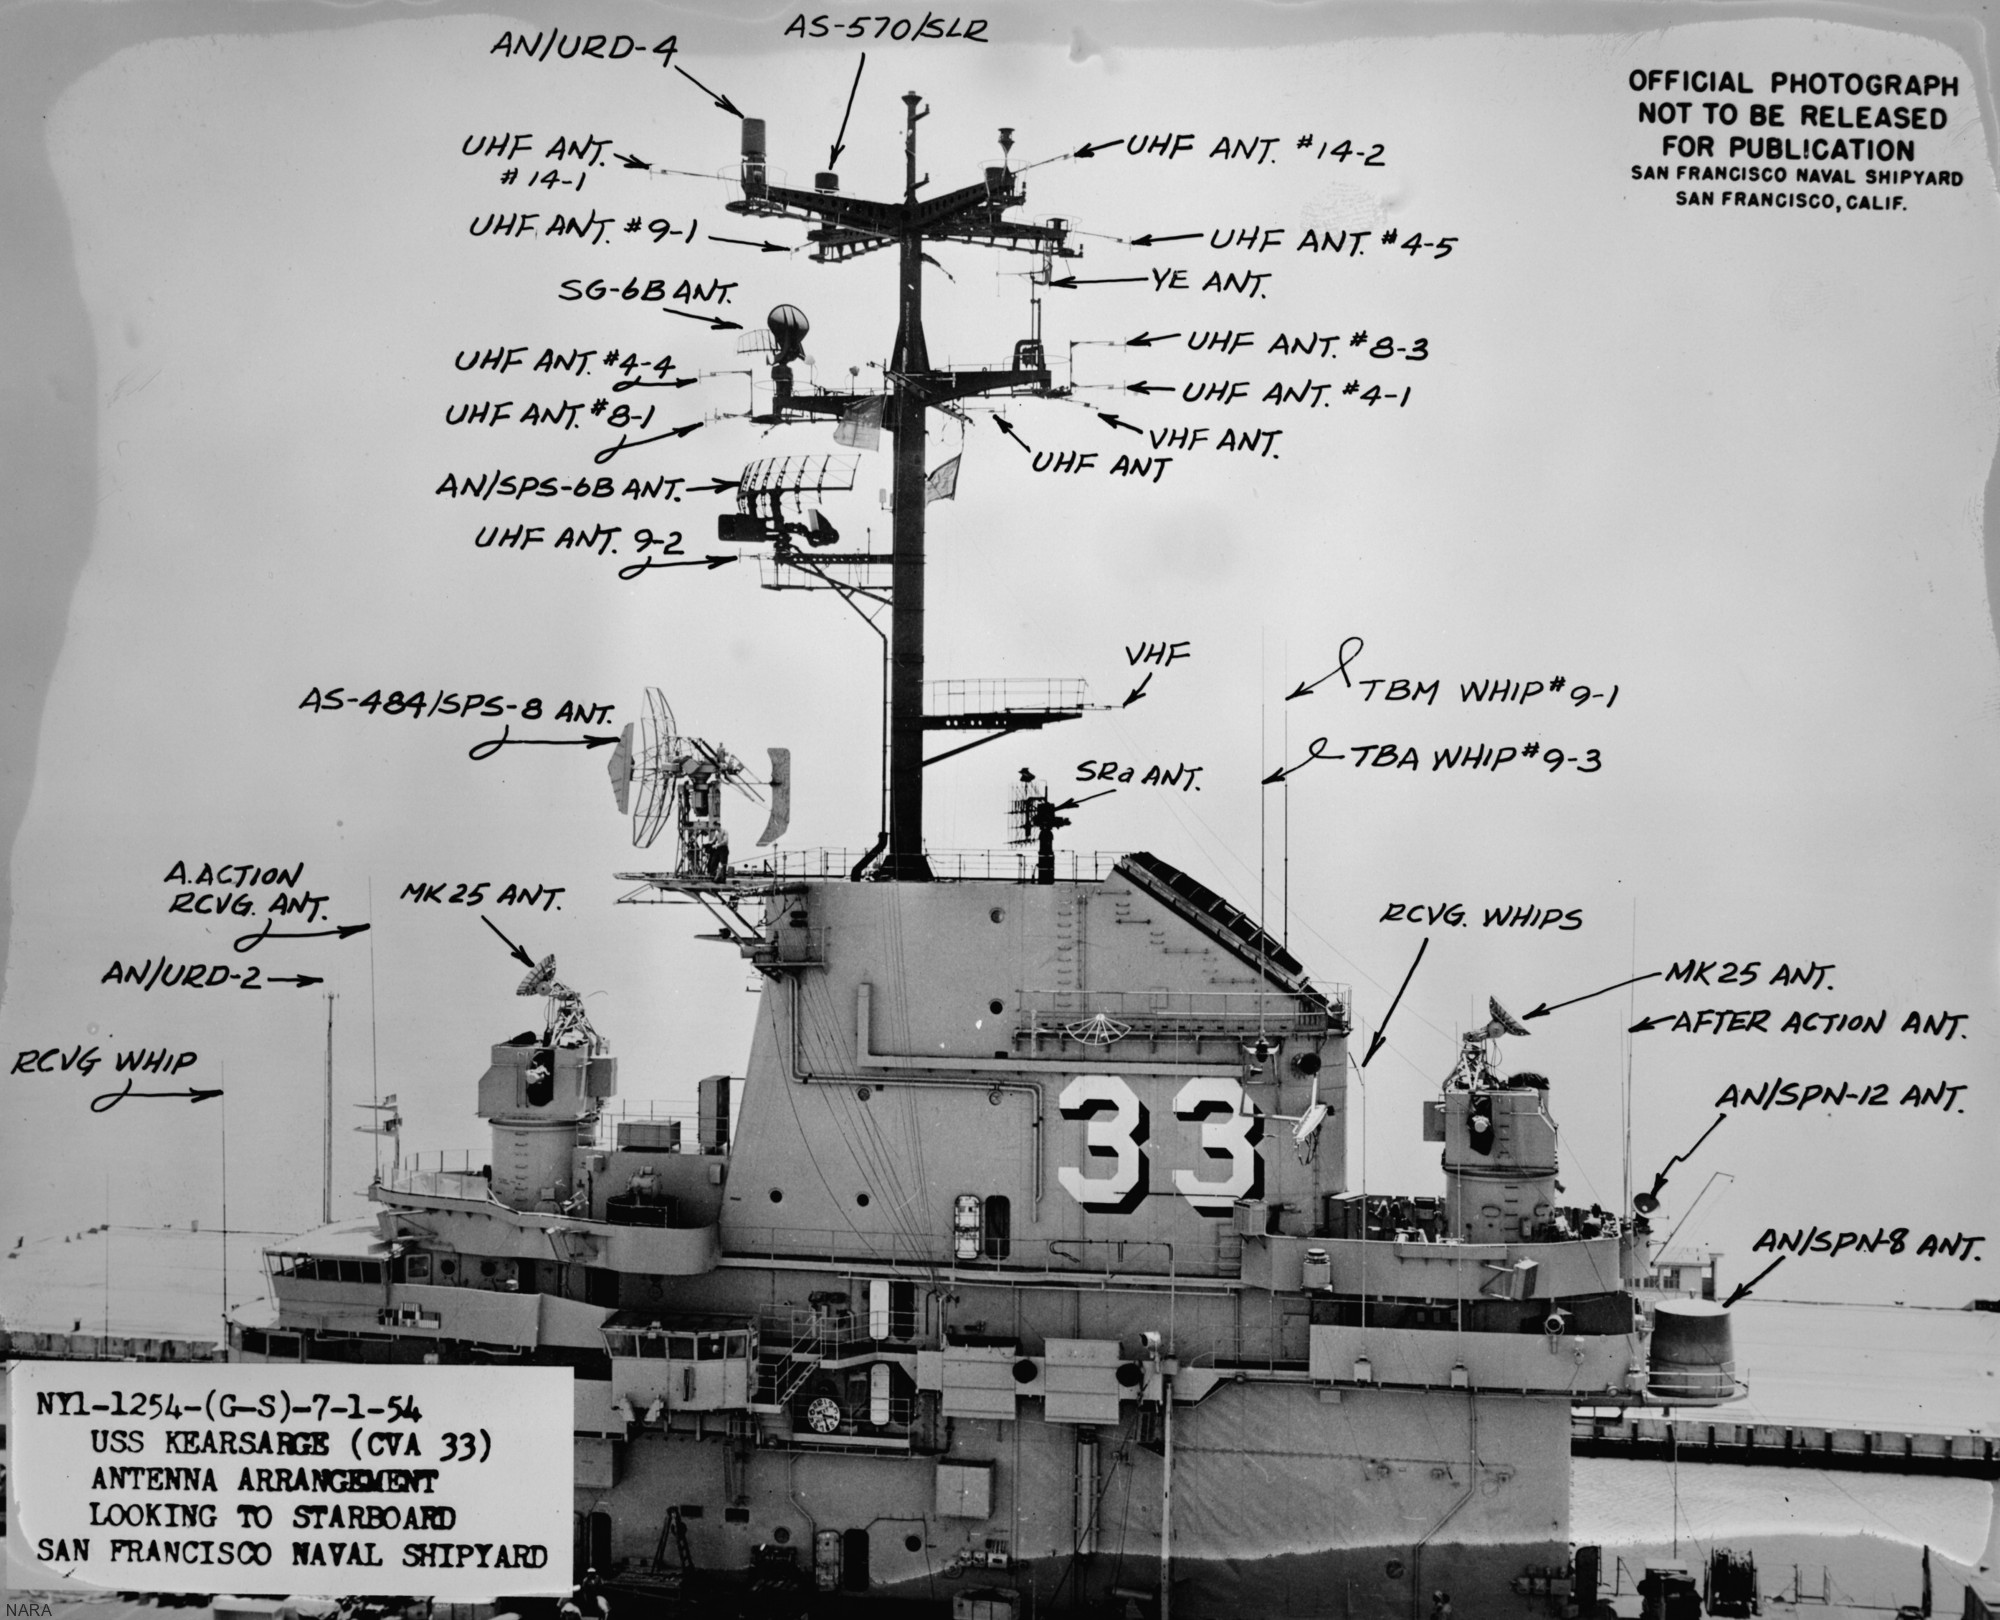 cva-33 uss kearsarge essex class aircraft carrier 13 antenna arrangement